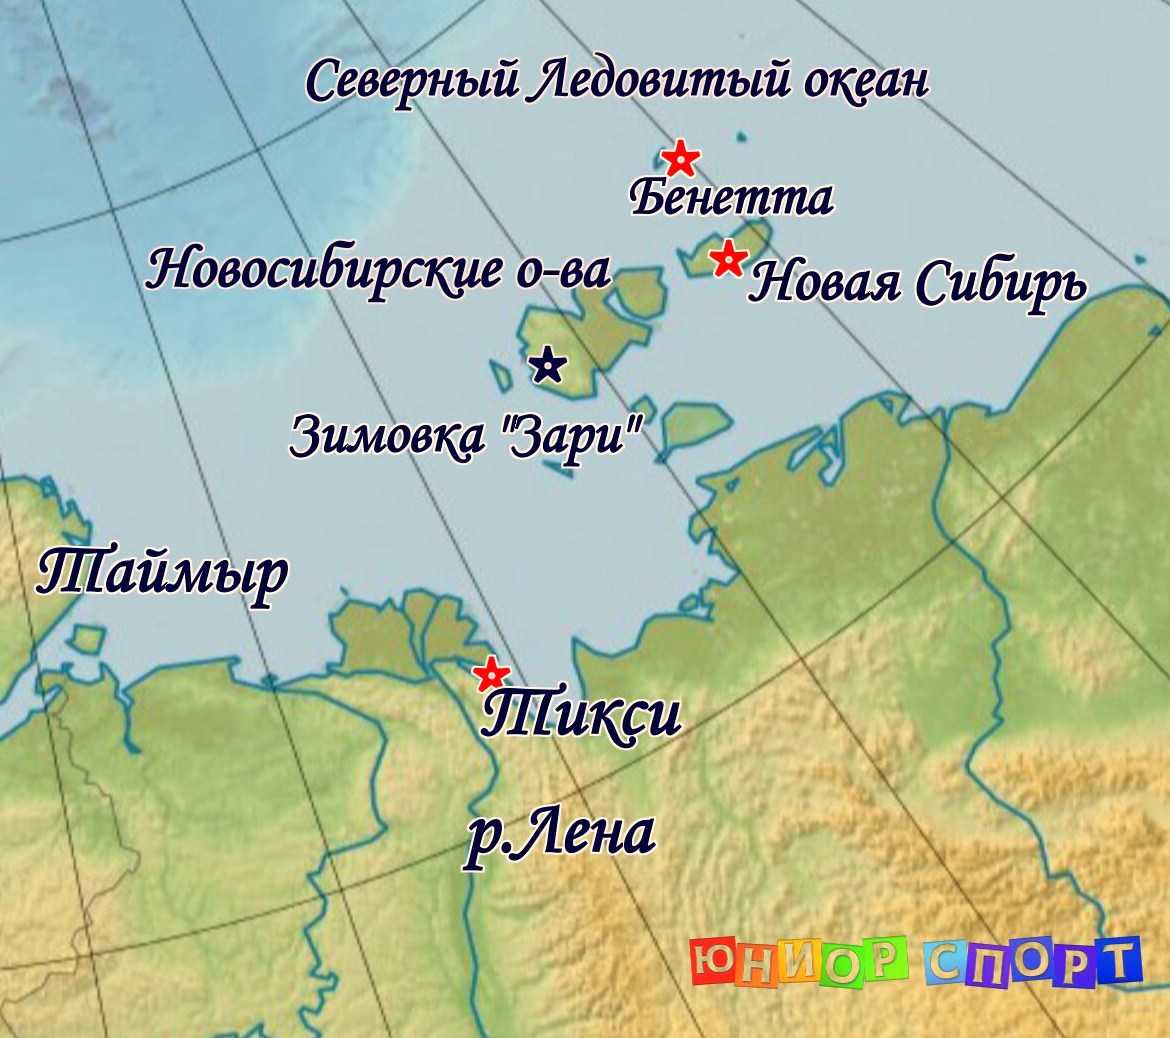 Челюскин на карте евразии. Мыс Челюскин на полуострове Таймыр на карте. Полуостров Таймыр мыс Челюскин. Мыс Челюскин на полуострове Таймыр на карте России. Карта мыс Челюскин на карте.